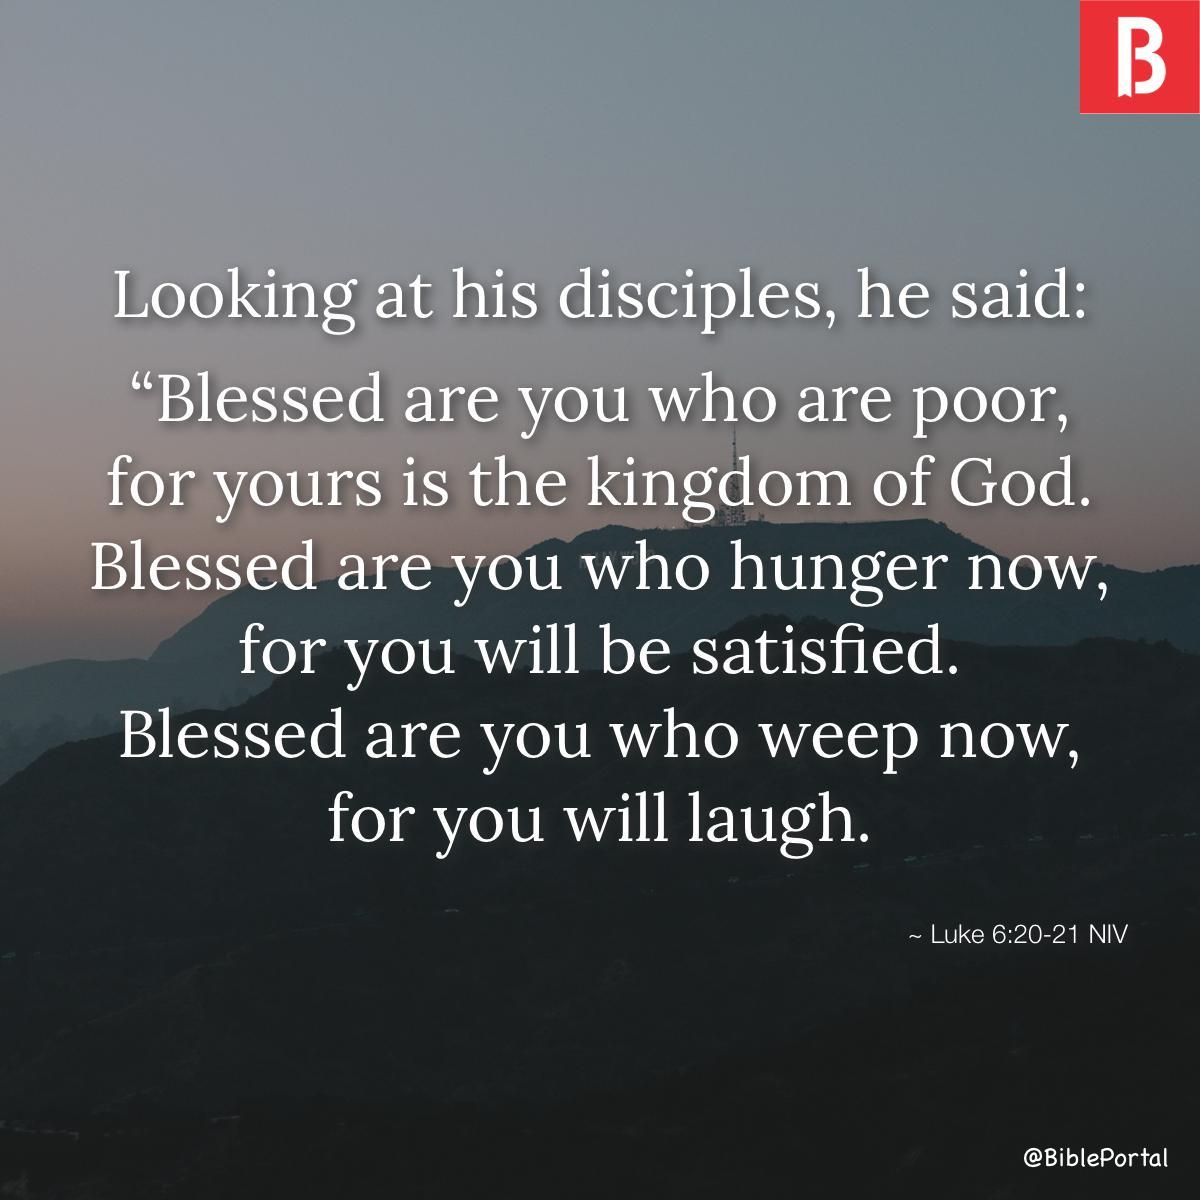 Luke 6:20-21 NIV